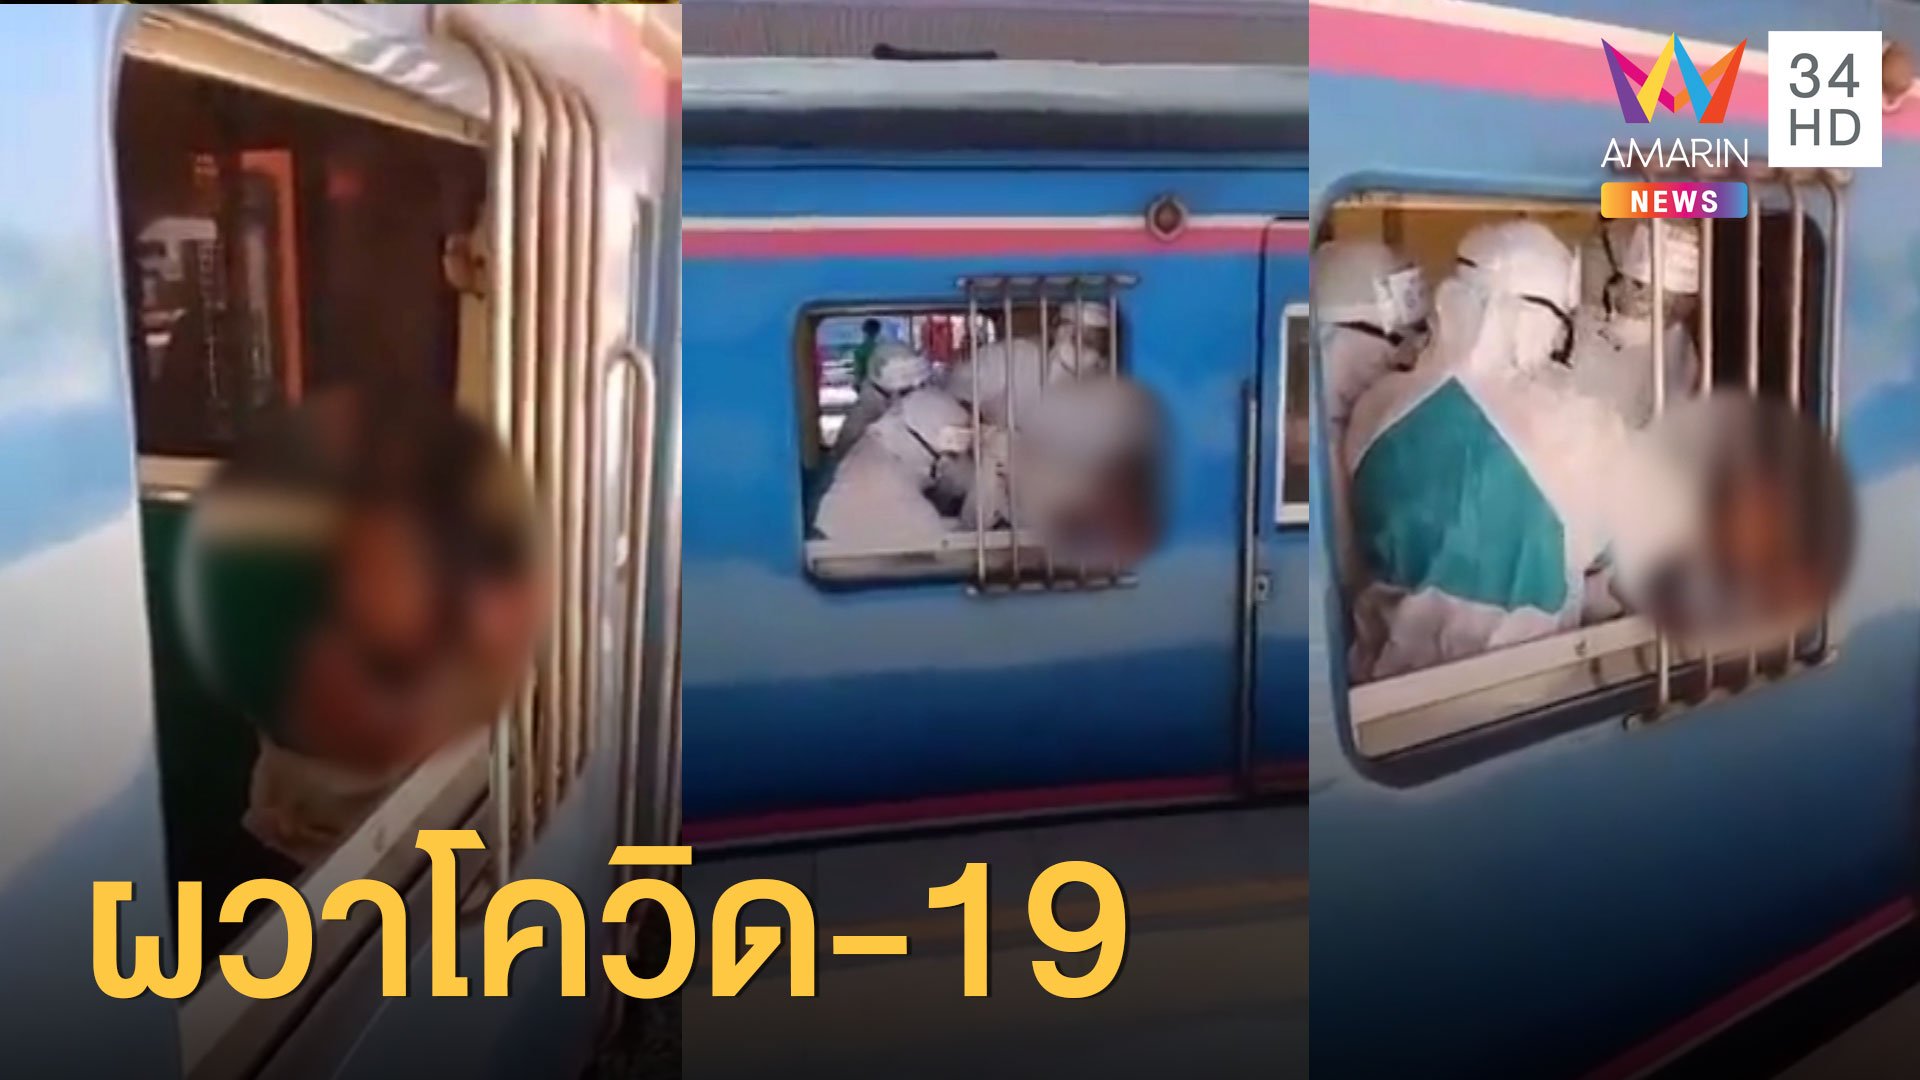 ผวา หญิงถุยน้ำลายใส่ผู้โดยสารรถไฟ | ข่าวเย็นอมรินทร์ | 3 เม.ย. 63 | AMARIN TVHD34